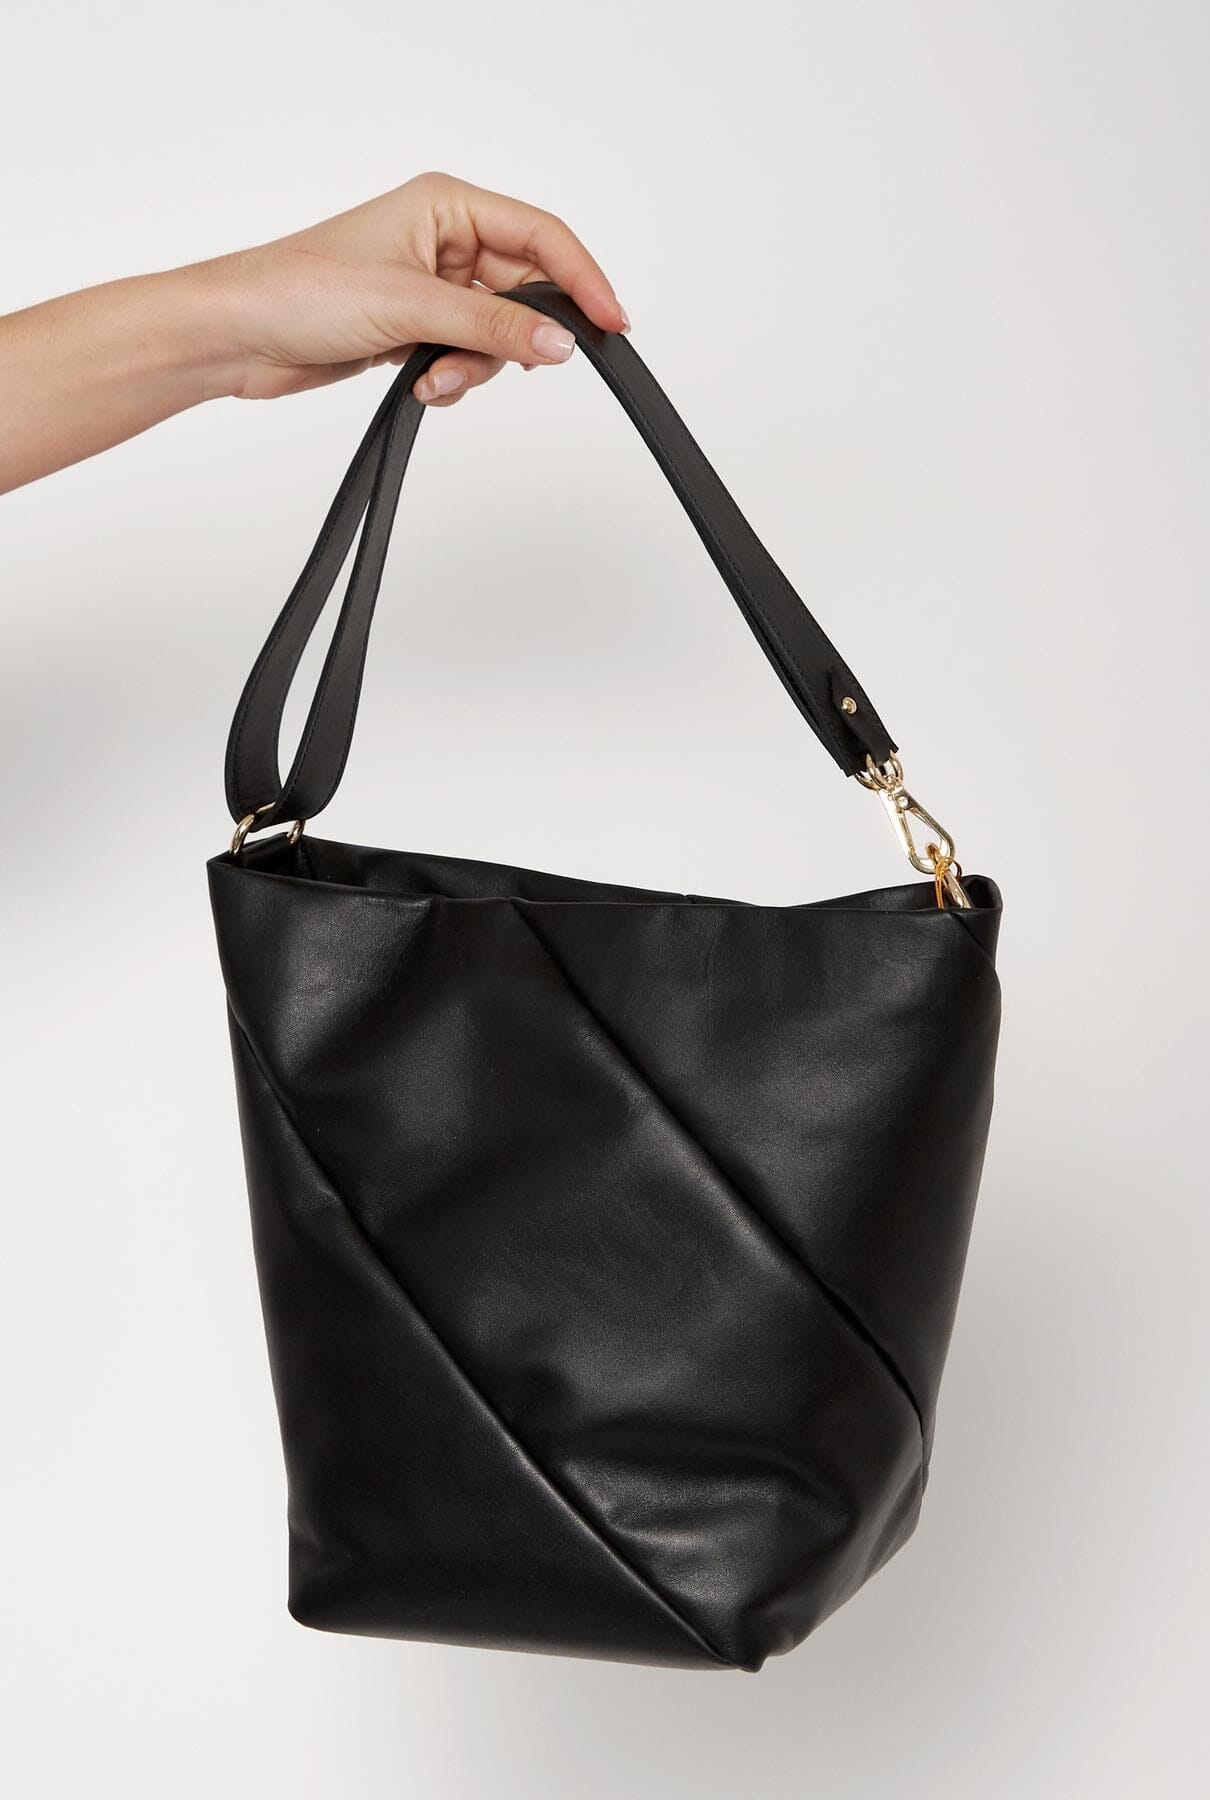 The Lola Bag Negro Shoulder Bag The Bag Lab 